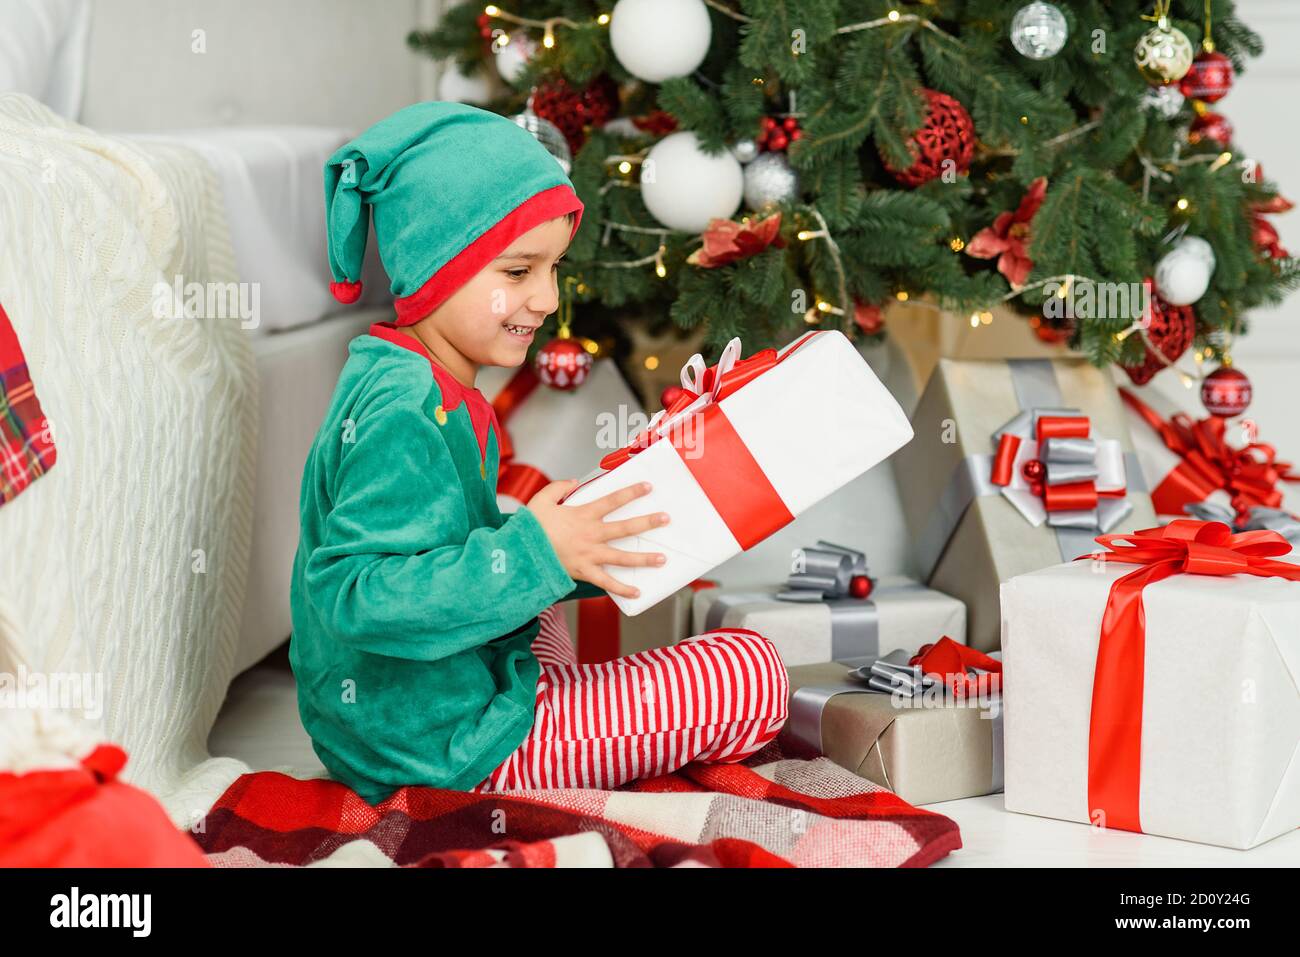 Boy abrir los regalos bajo el árbol de Noël en mañana. Niñito muchacho  sentado en el suelo abriendo regalos de Navidad. Niño bajo el árbol de  Navidad con cajas de regalo. Deco